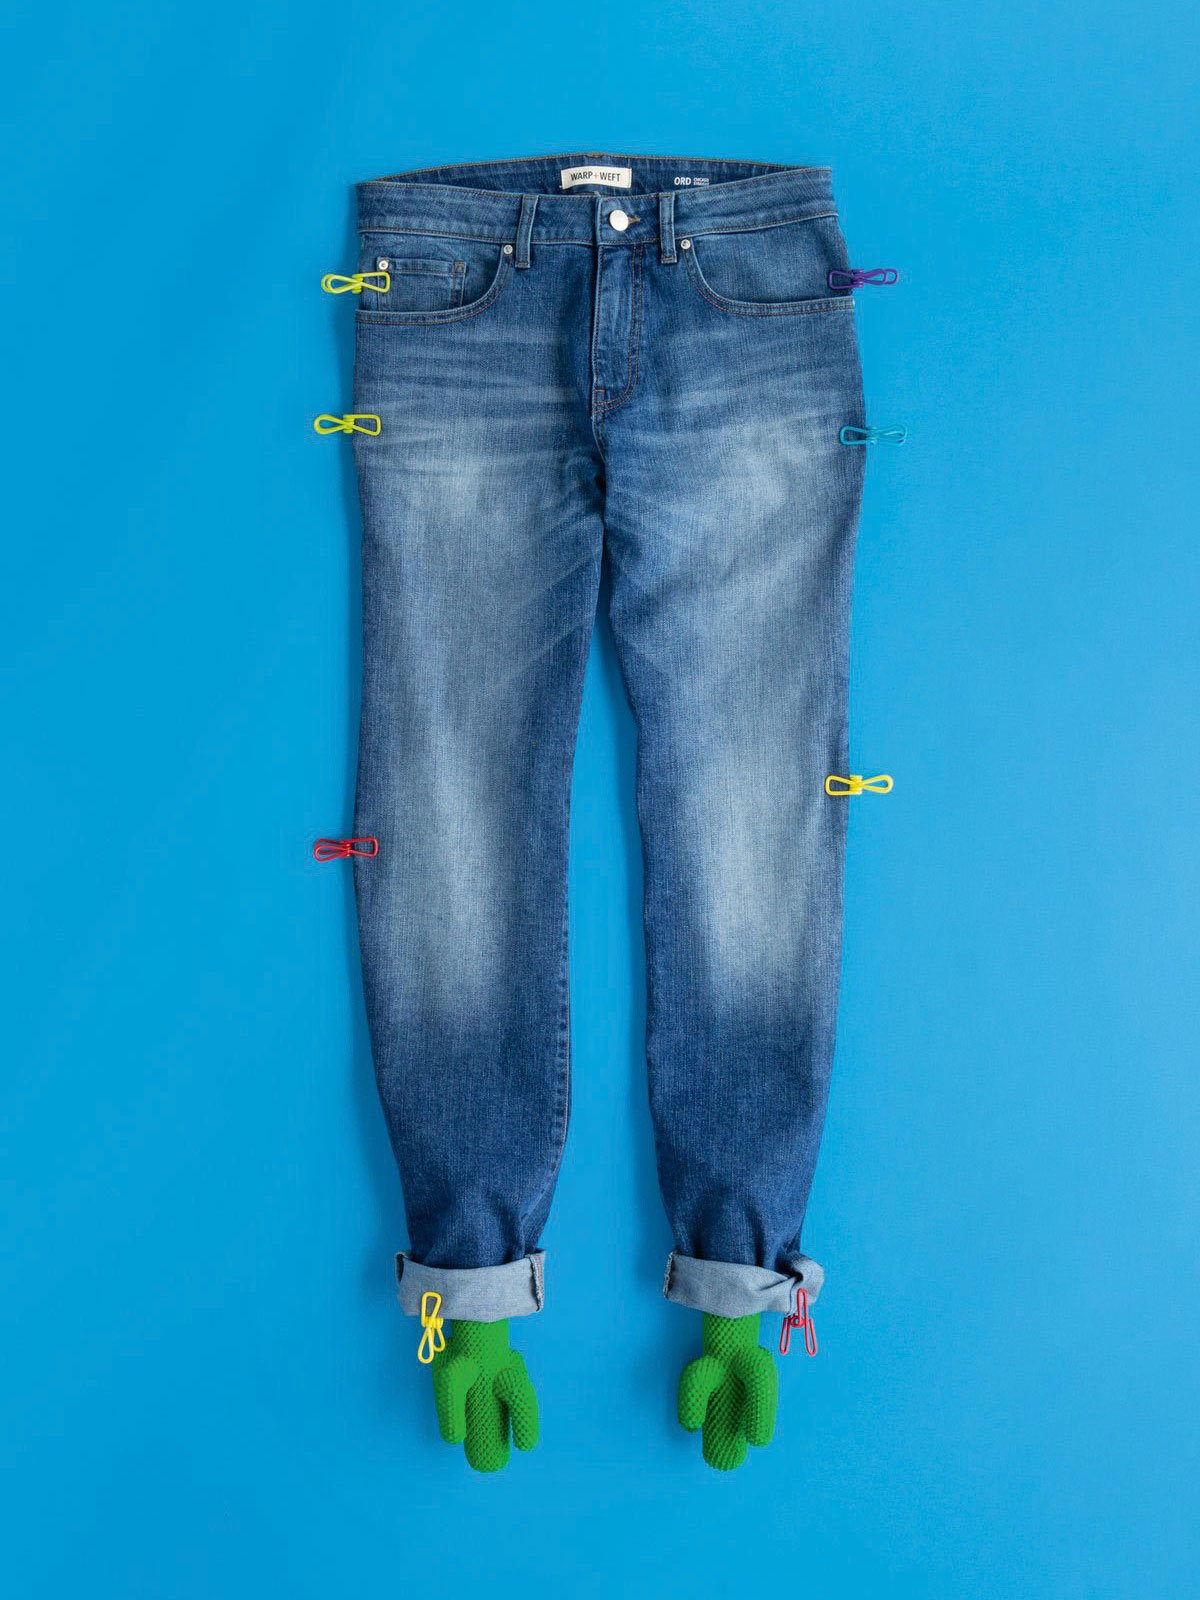 Hightech: Die amerikanische Firma Warp + Weft arbeitet an einer antiviralen Beschichtung für ihre Jeans.